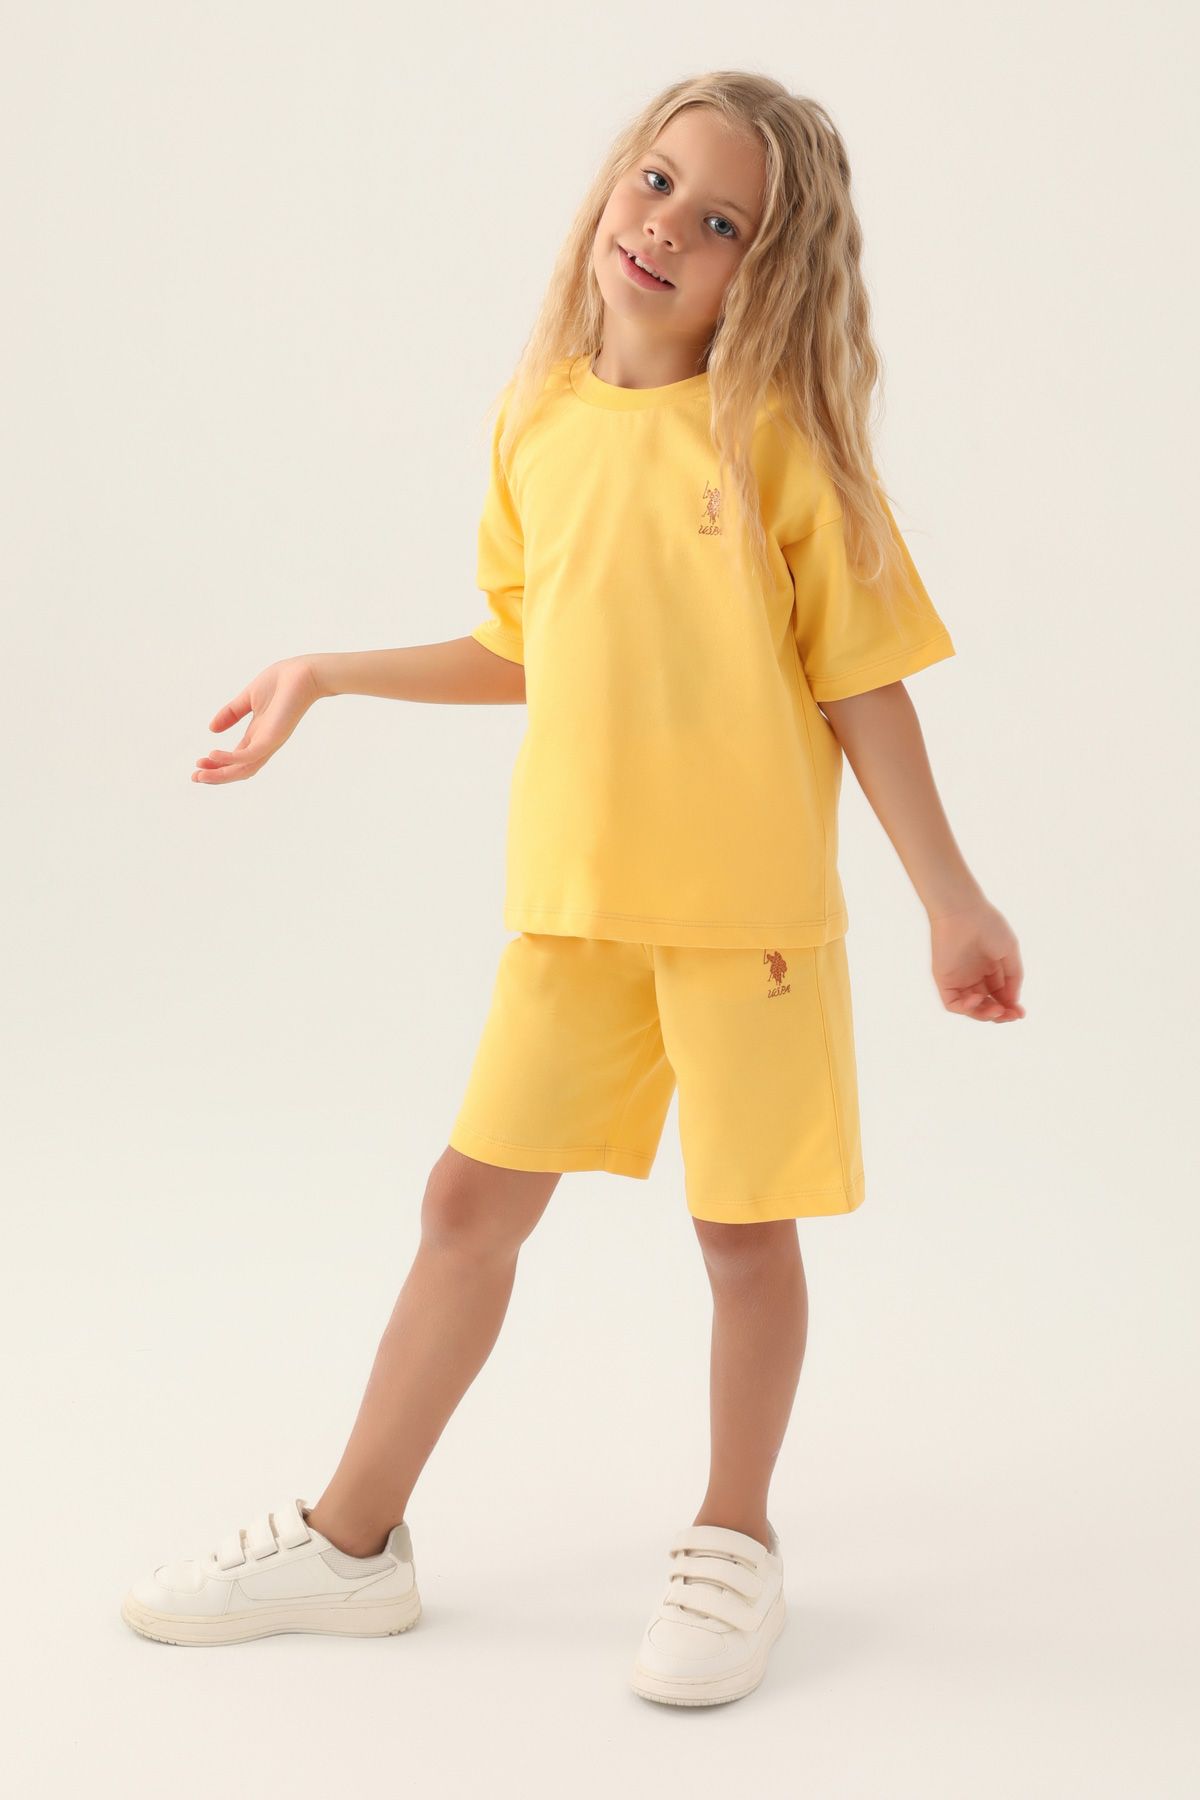 Костюм повседневный детский U.S. POLO Assn. US1822-V1, желтый, 128 костюм повседневный детский u s polo assn us1822 v1 розовая пудра 158